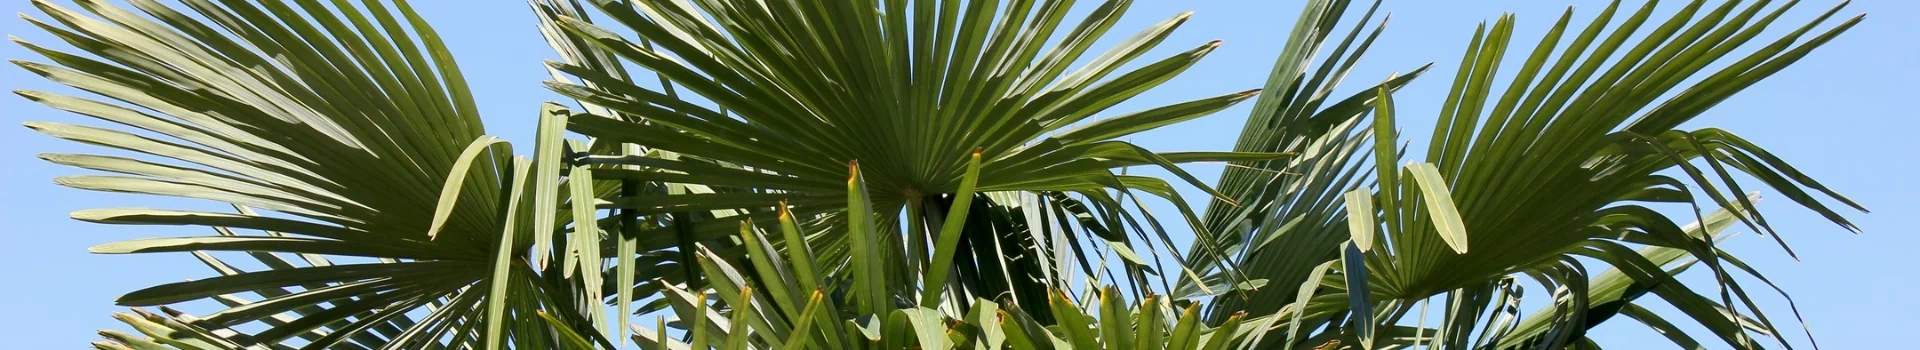 rozłożyste liście palmy